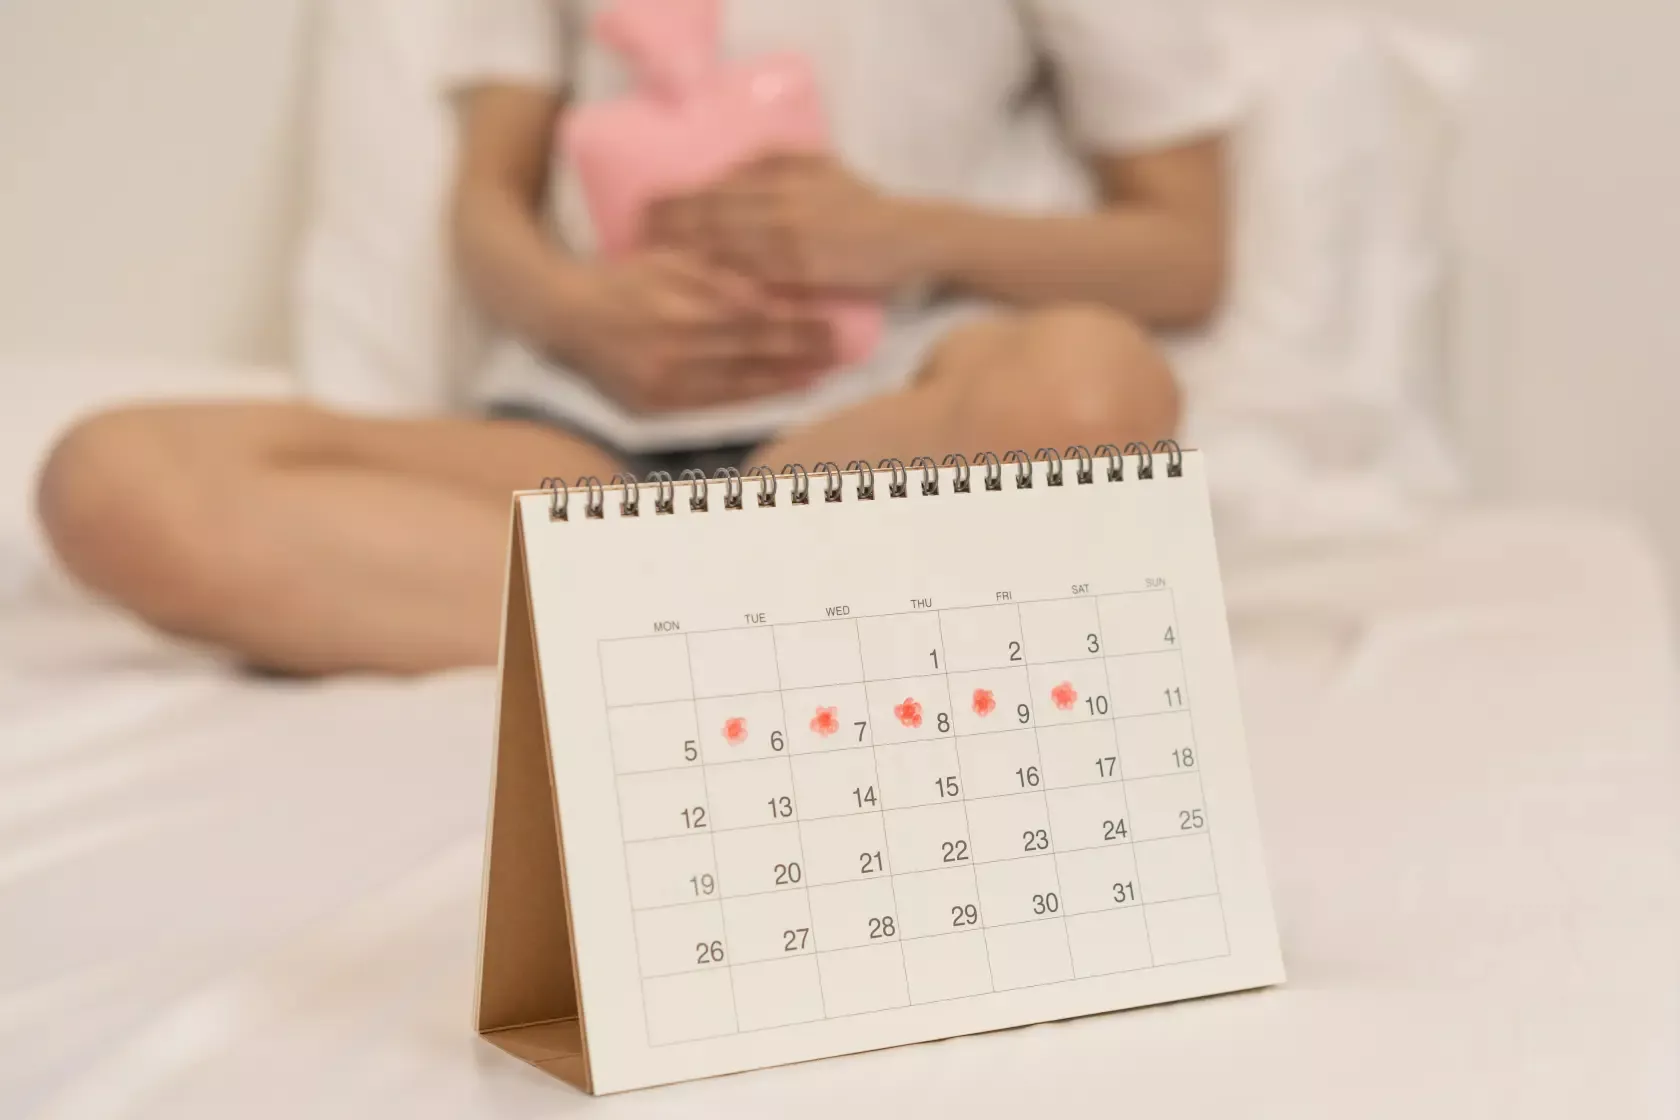 Frau sitzt mit Wärmflasche auf dem Bett. Vor ihr der Menstruationskalender.